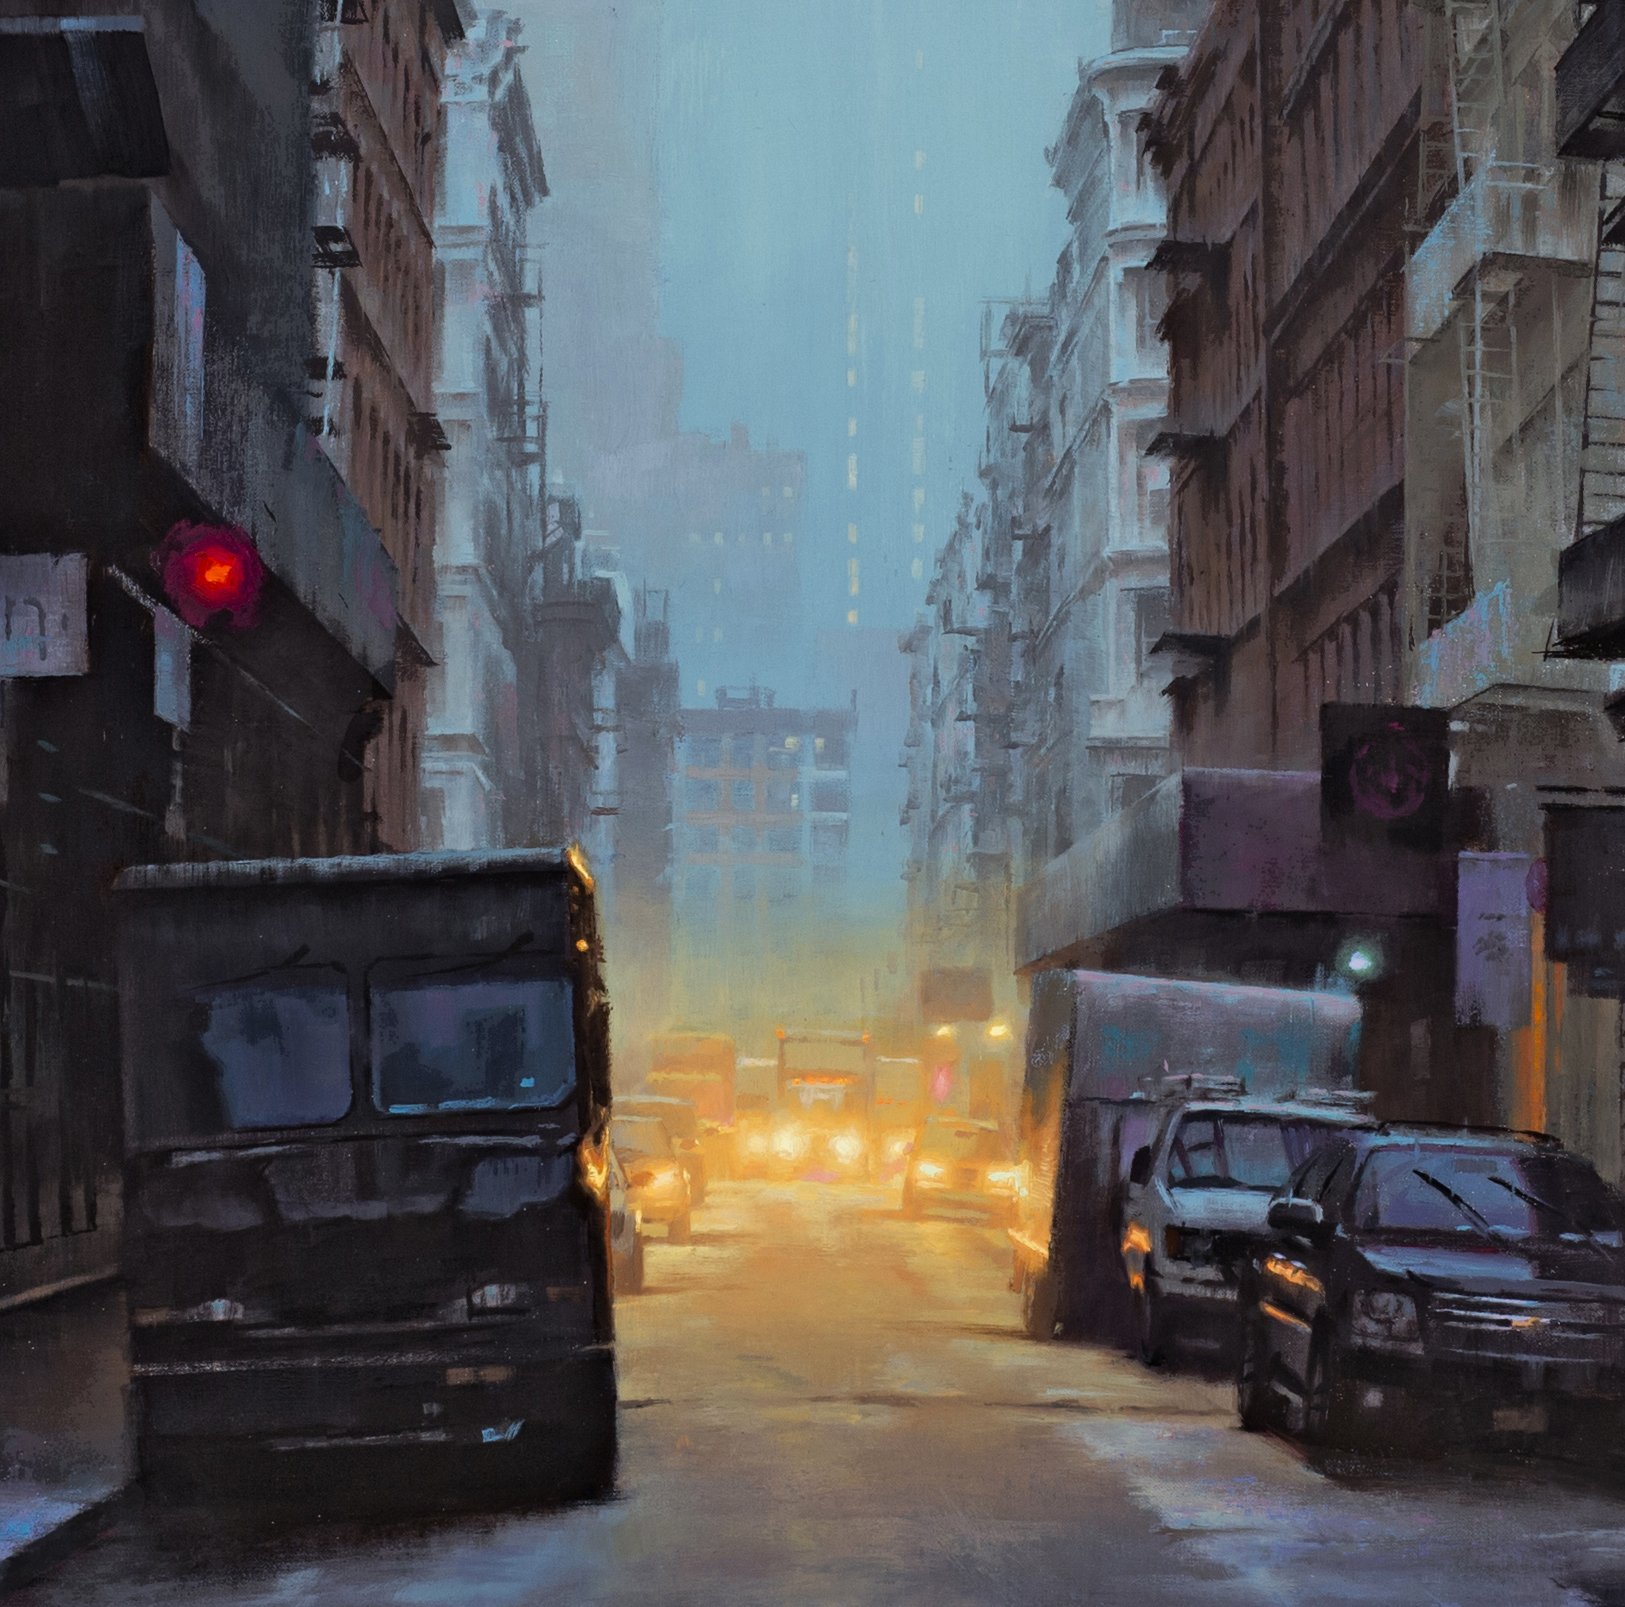 painting nocturnes - Gavin Glakas, "Soho in the Rain" (detail), Oil on linen, 36" x 72"